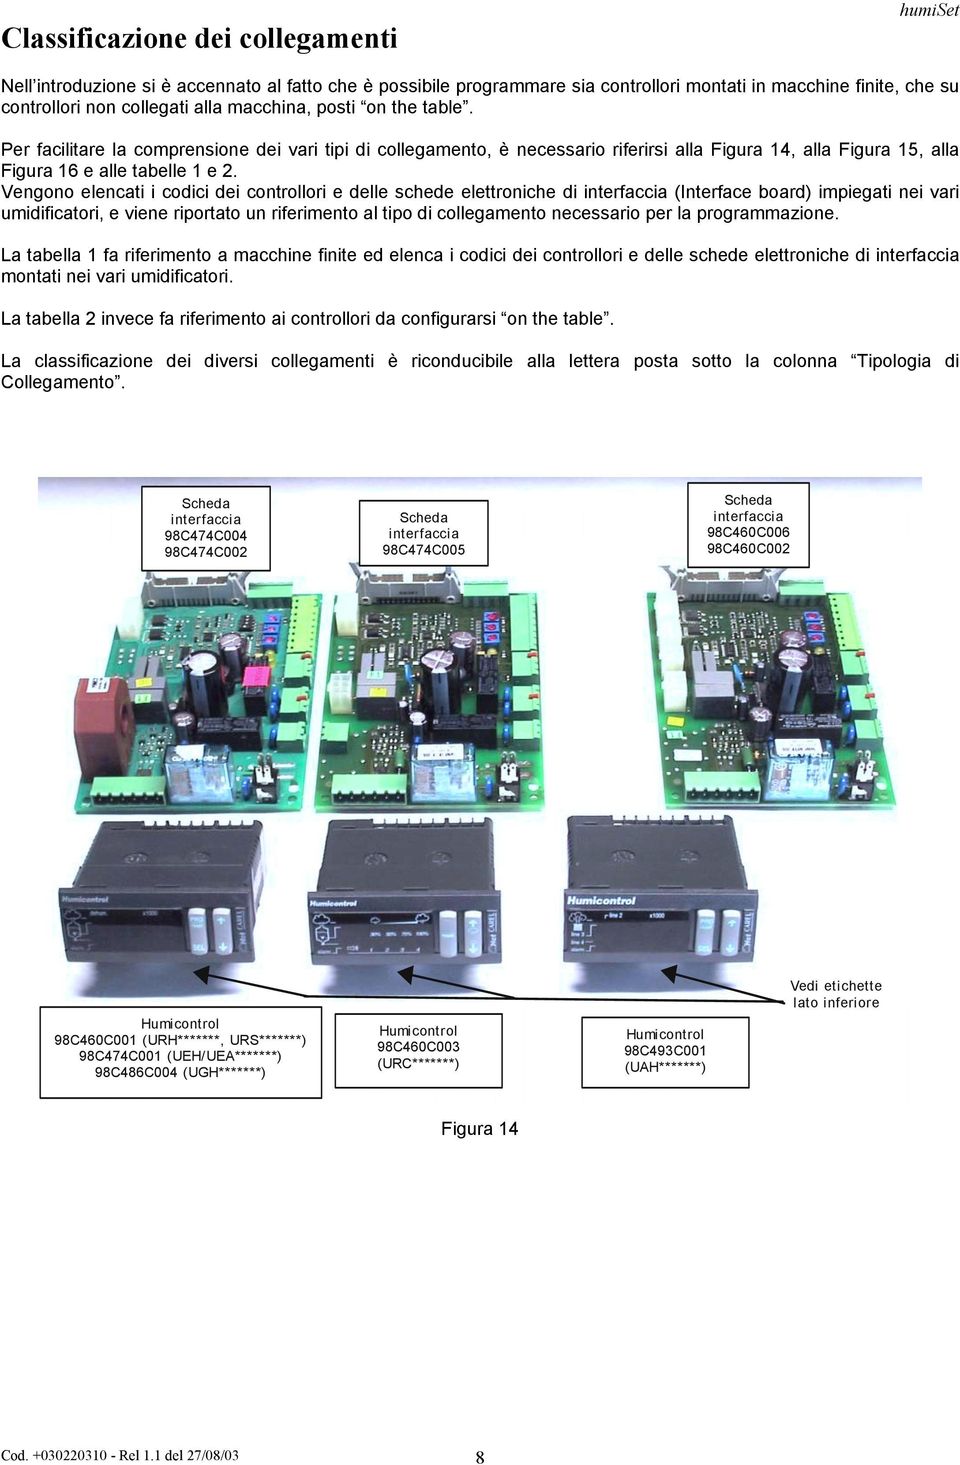 Vengono elencati i codici dei controllori e delle schede elettroniche di interfaccia (Interface board) impiegati nei vari umidificatori, e viene riportato un riferimento al tipo di collegamento